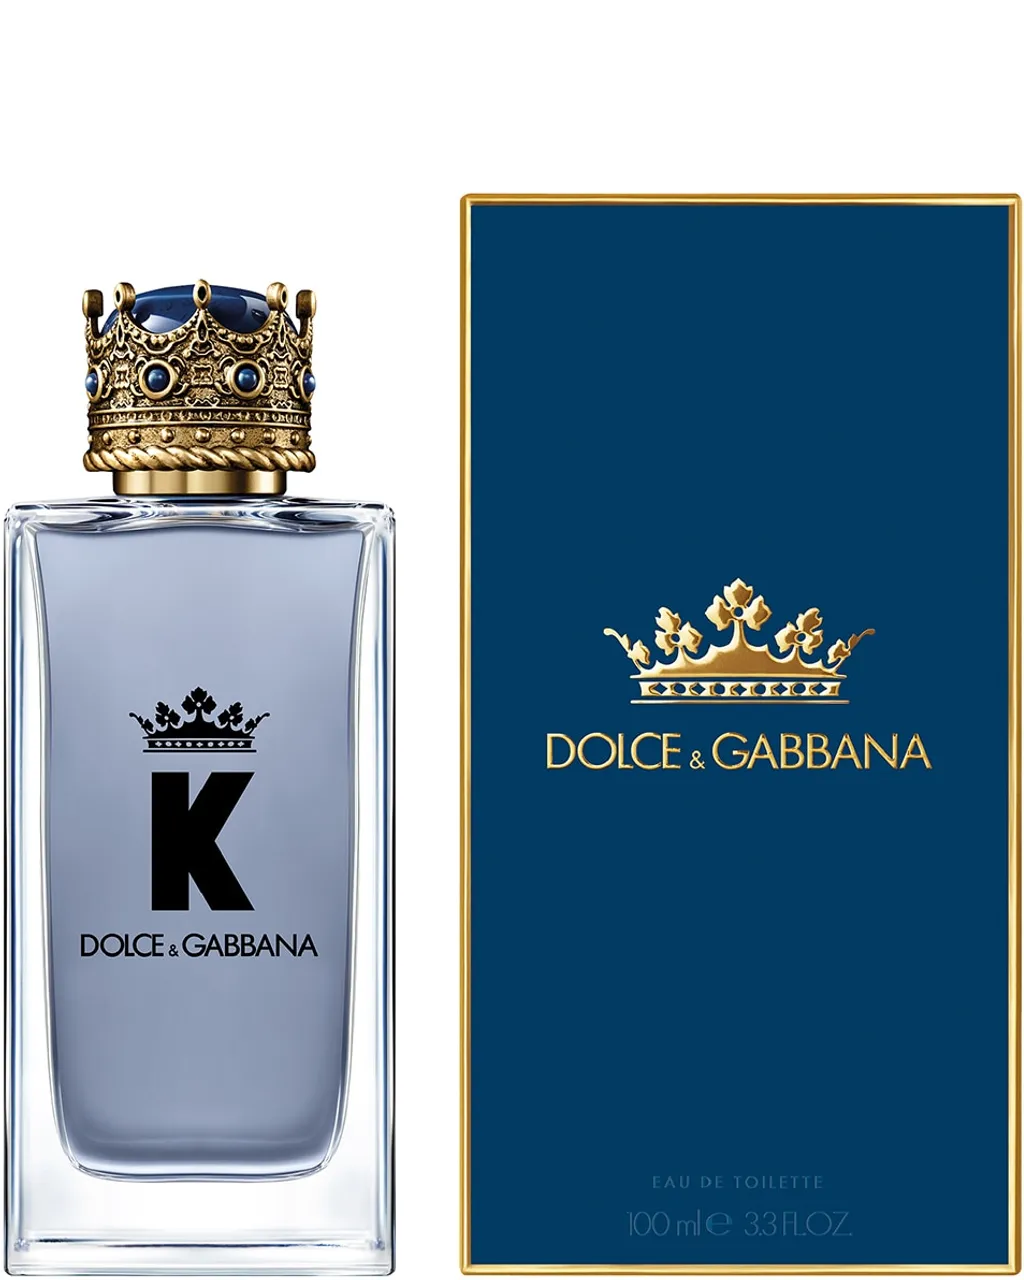 Dolce & Gabbana K By Dolce&gabbana EAU DE TOILETTE 100 ML